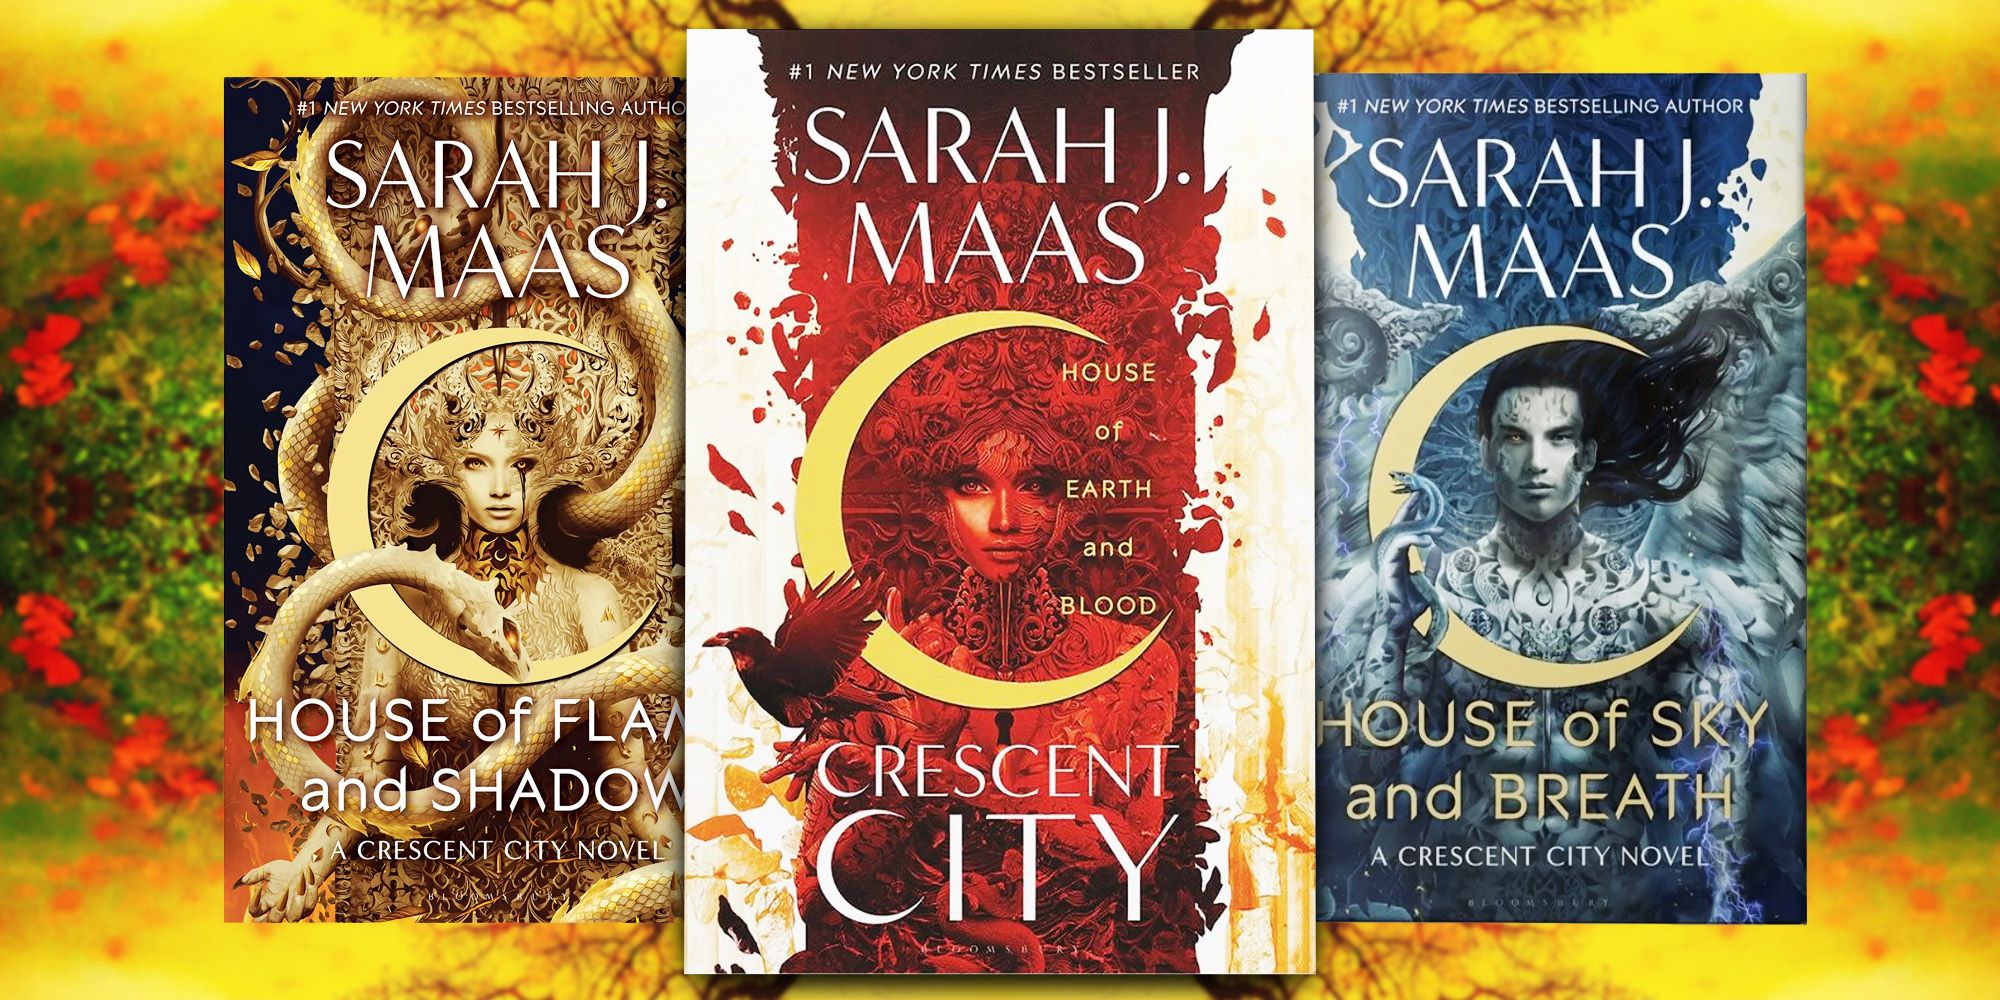 As capas dos três livros de Crescent City contra um fundo vermelho, verde e amarelo